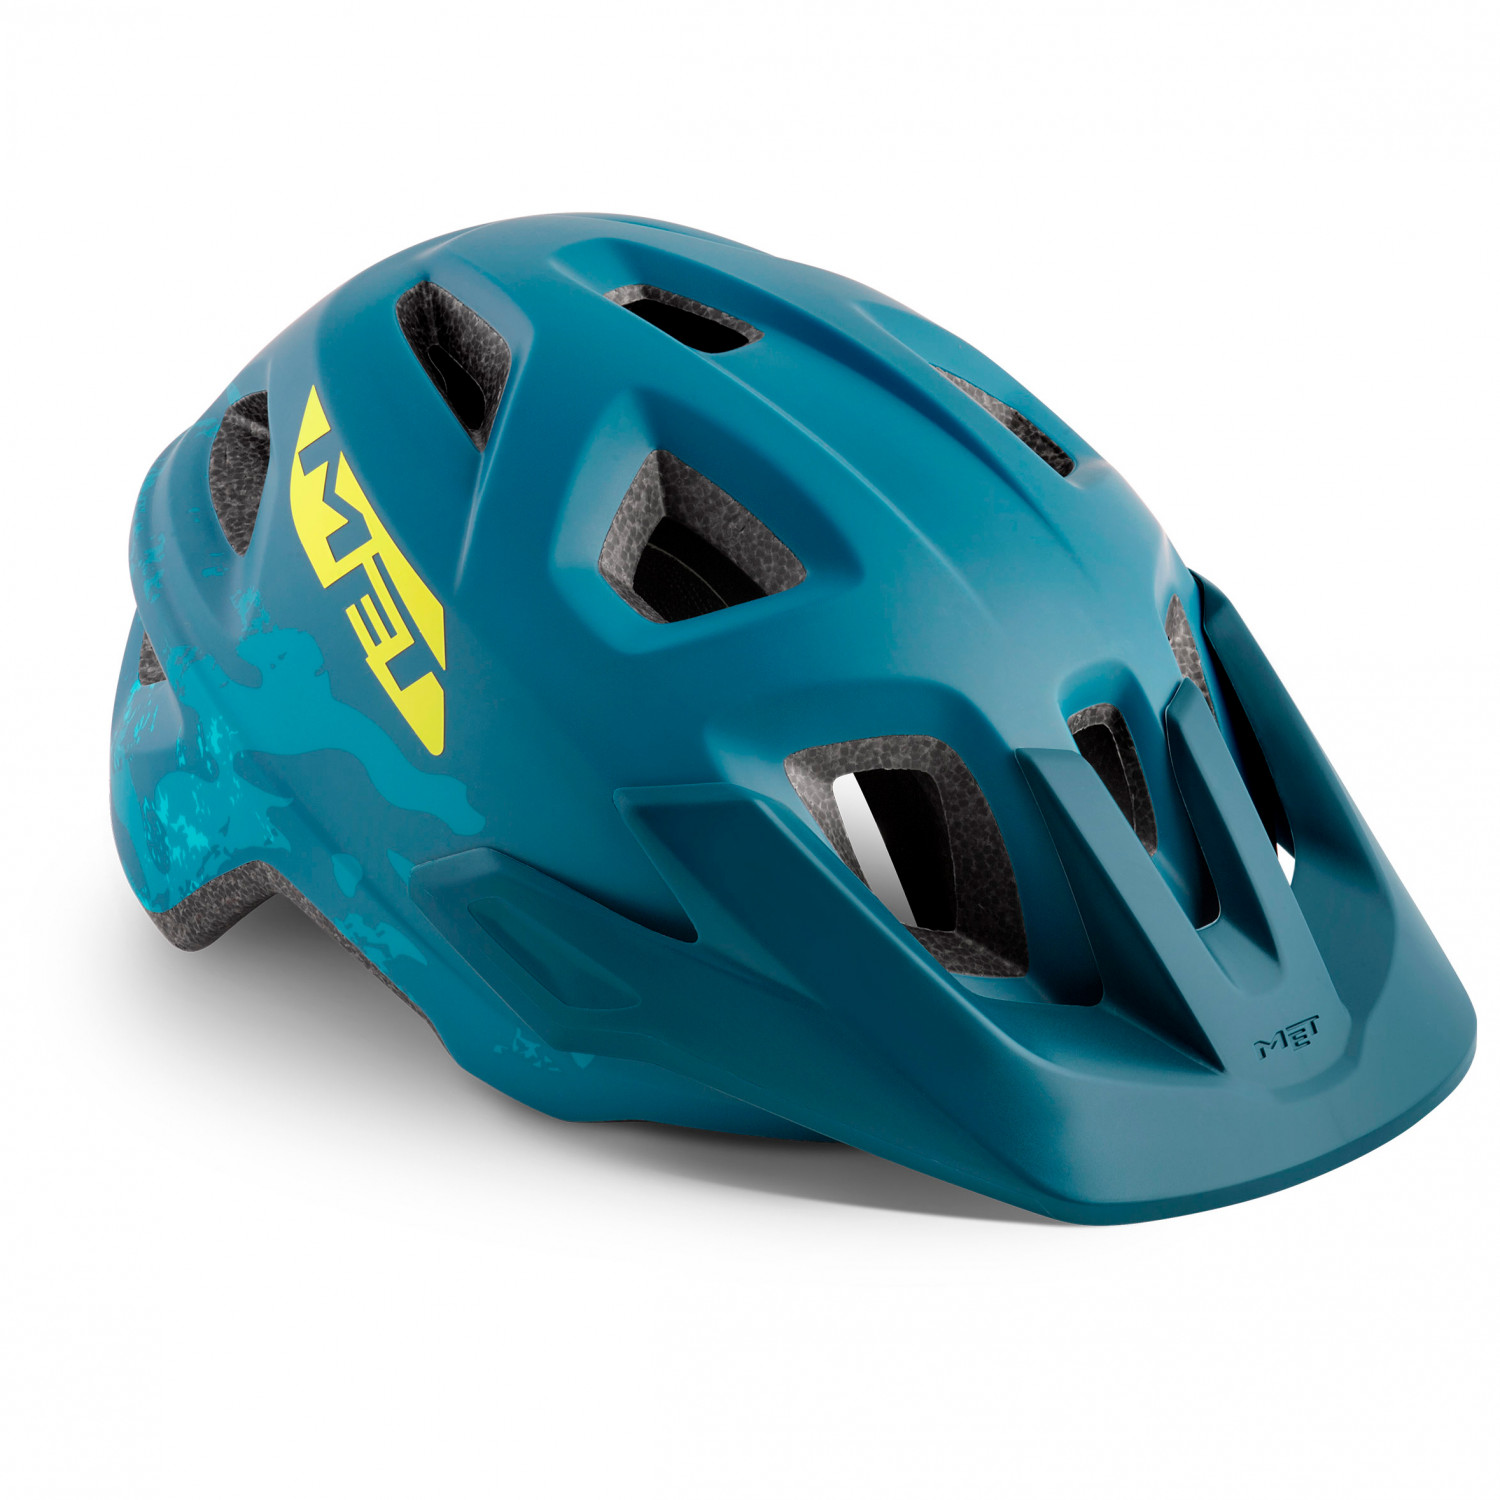 Велосипедный шлем Met Kid's Eldar, цвет Petrol Blue Camo